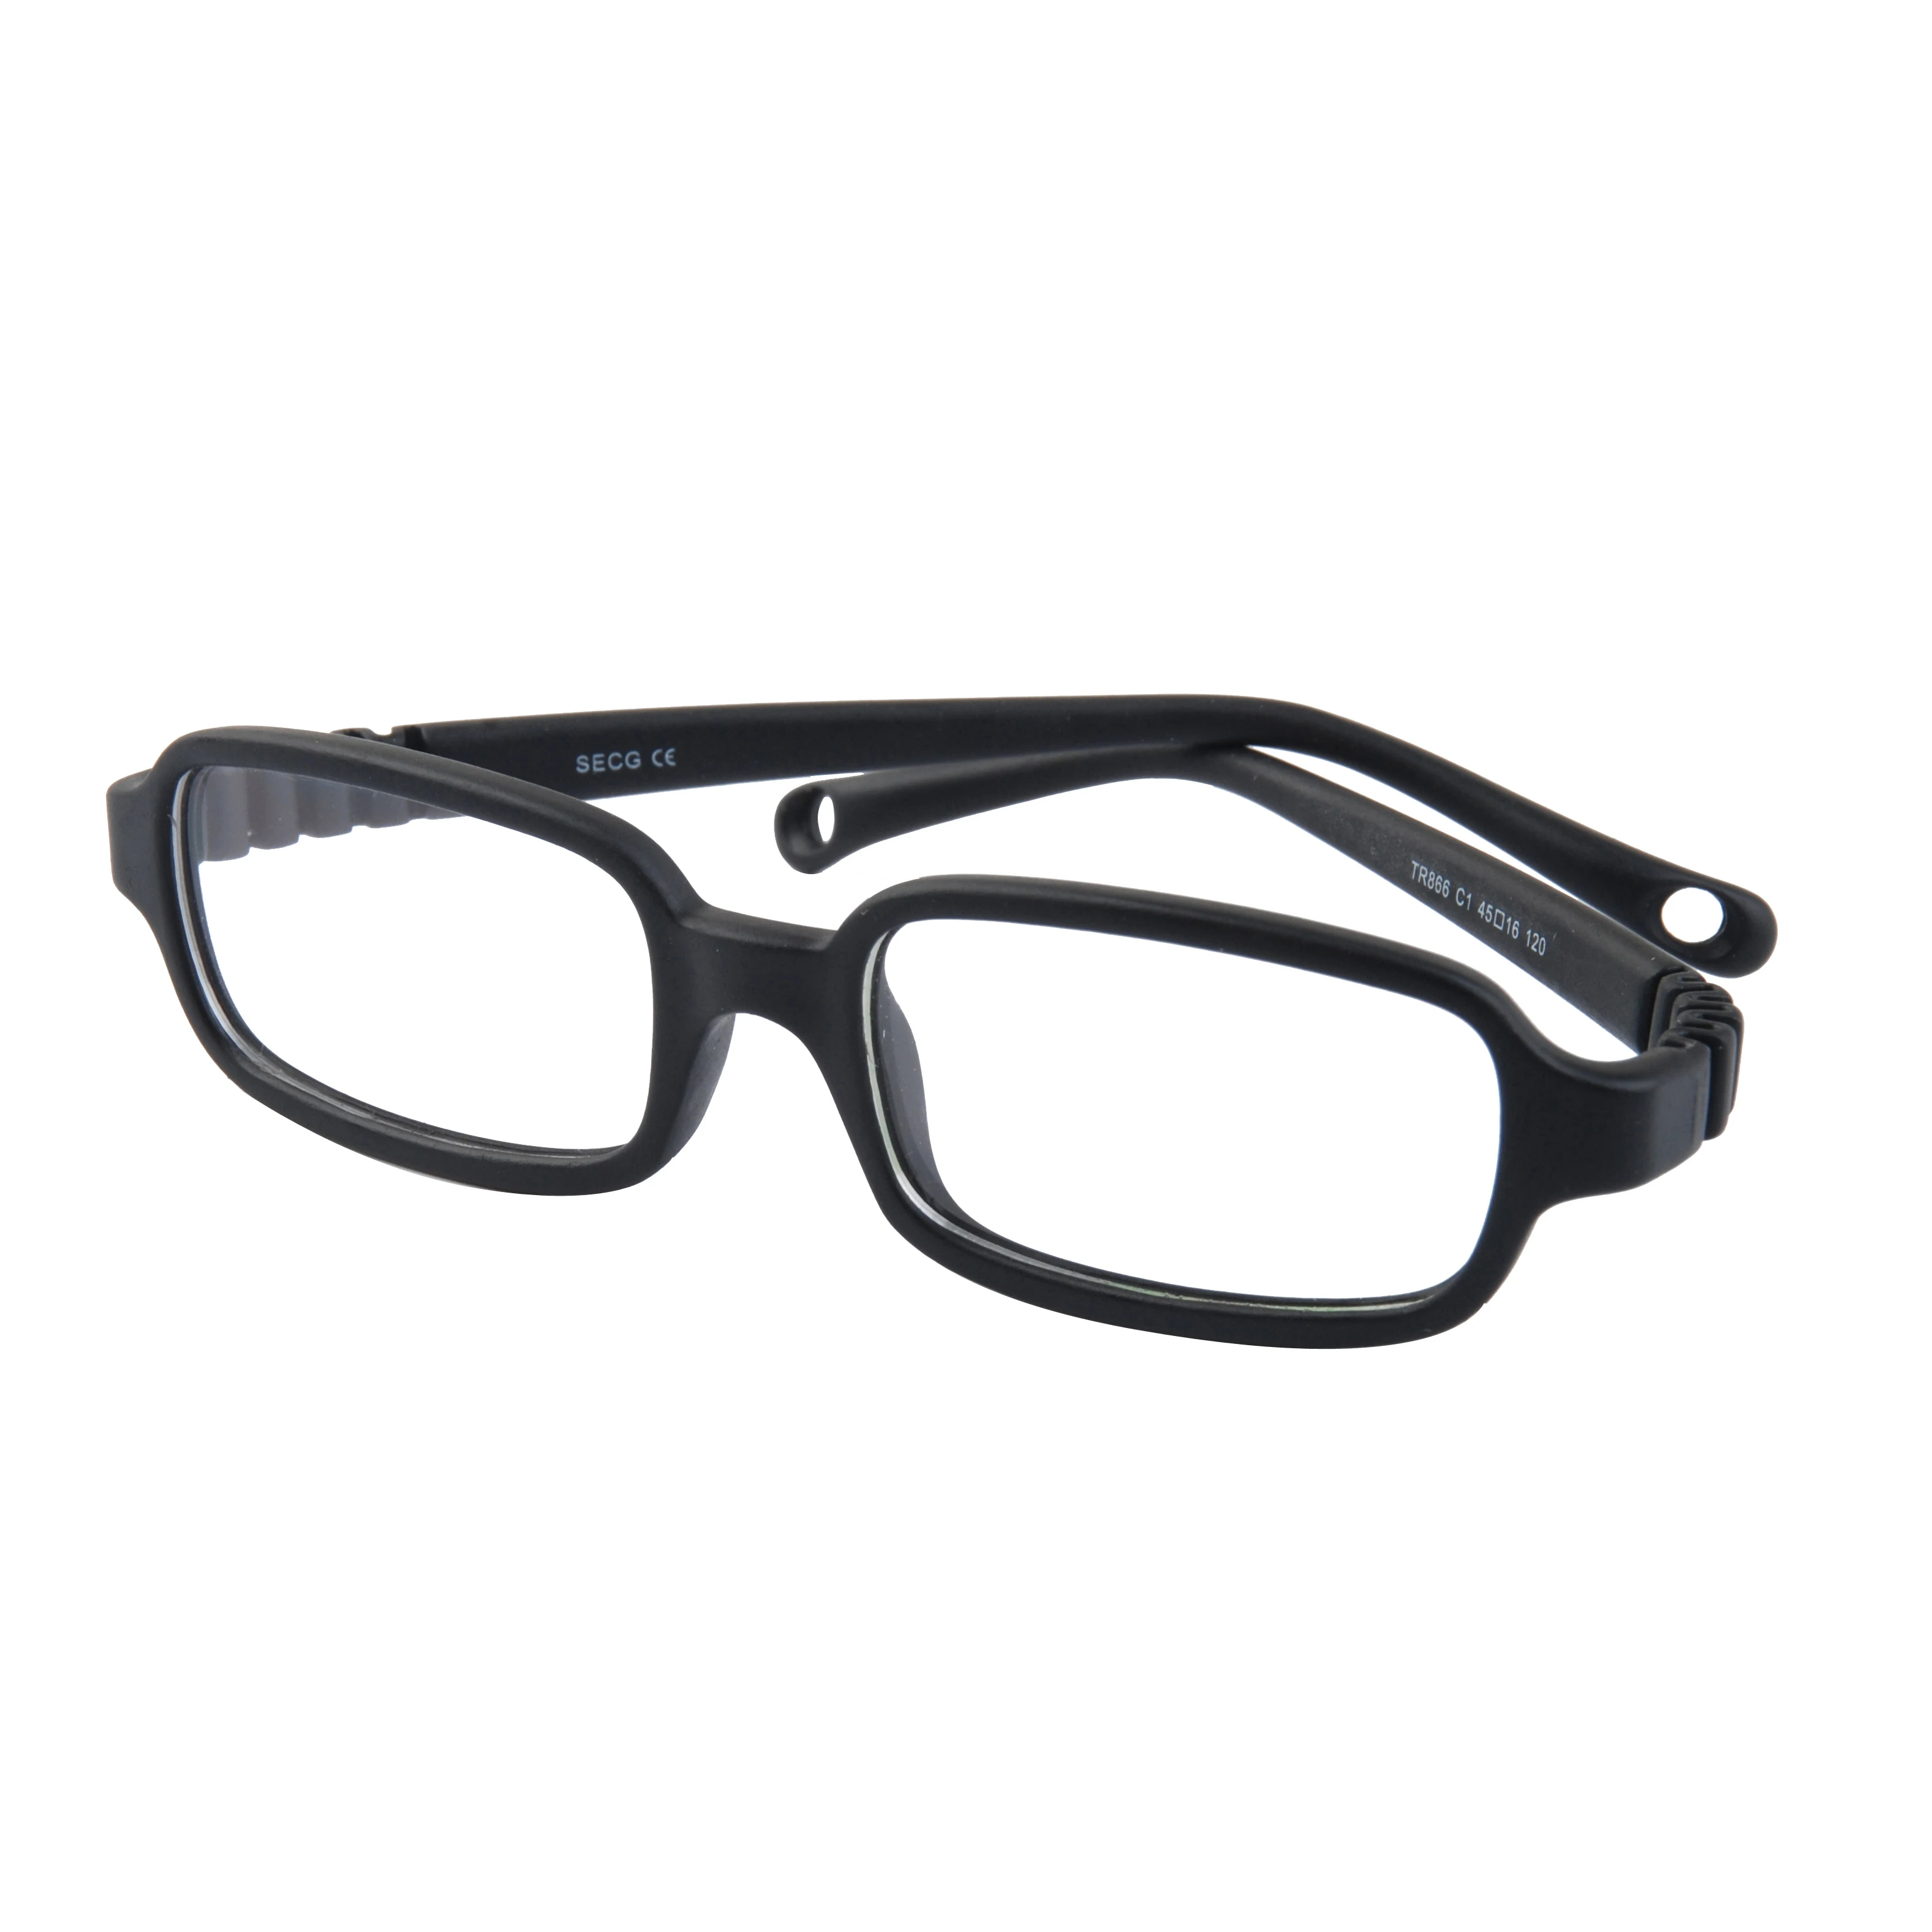 2019 New Design Hot-selling Kids Rubber Glasses Frames